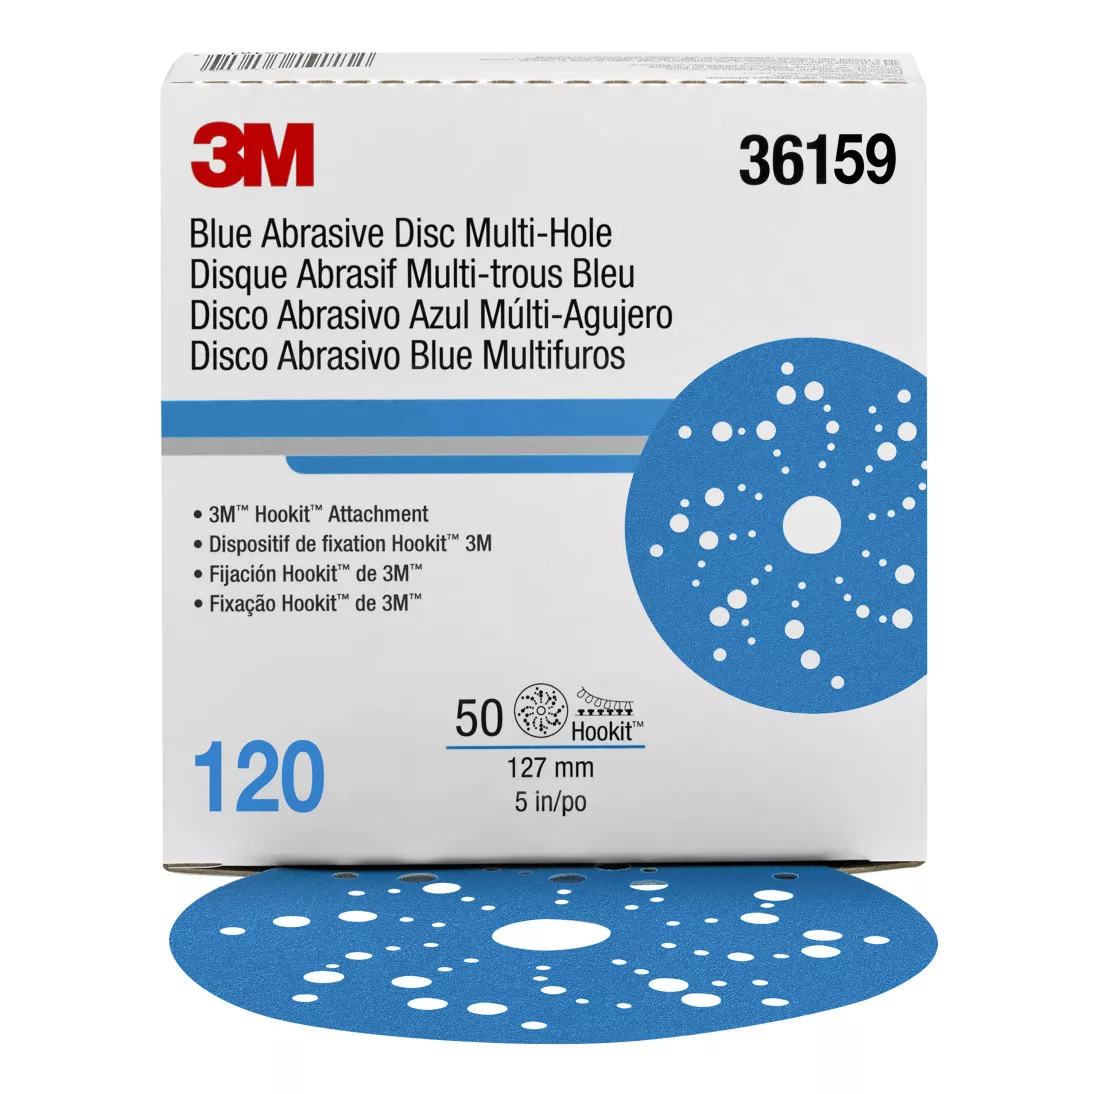 3M™ Hookit™ Blue Abrasive Disc 321U Multi-hole, 36159, 5 in, 120, 50
discs per carton, 4 cartons per case